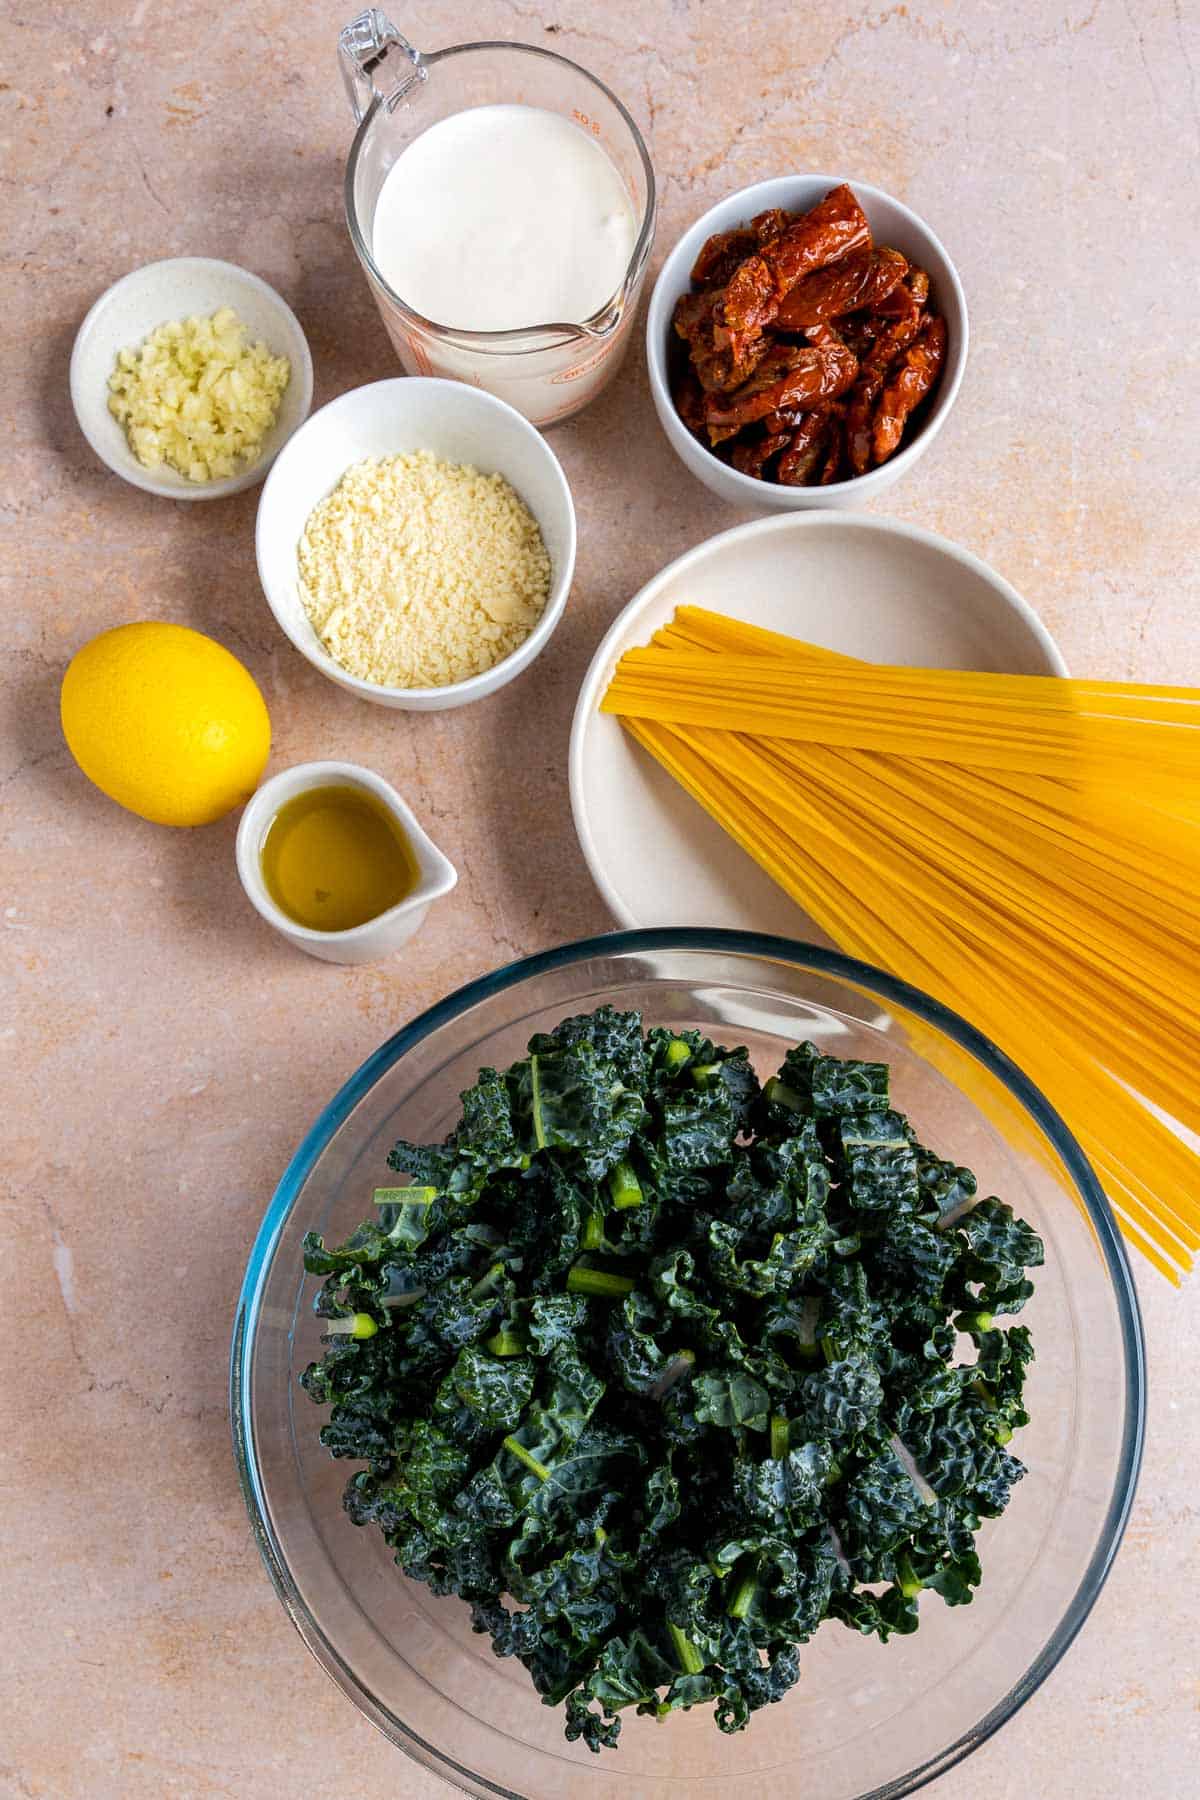 Creamy kale pasta ingredients.